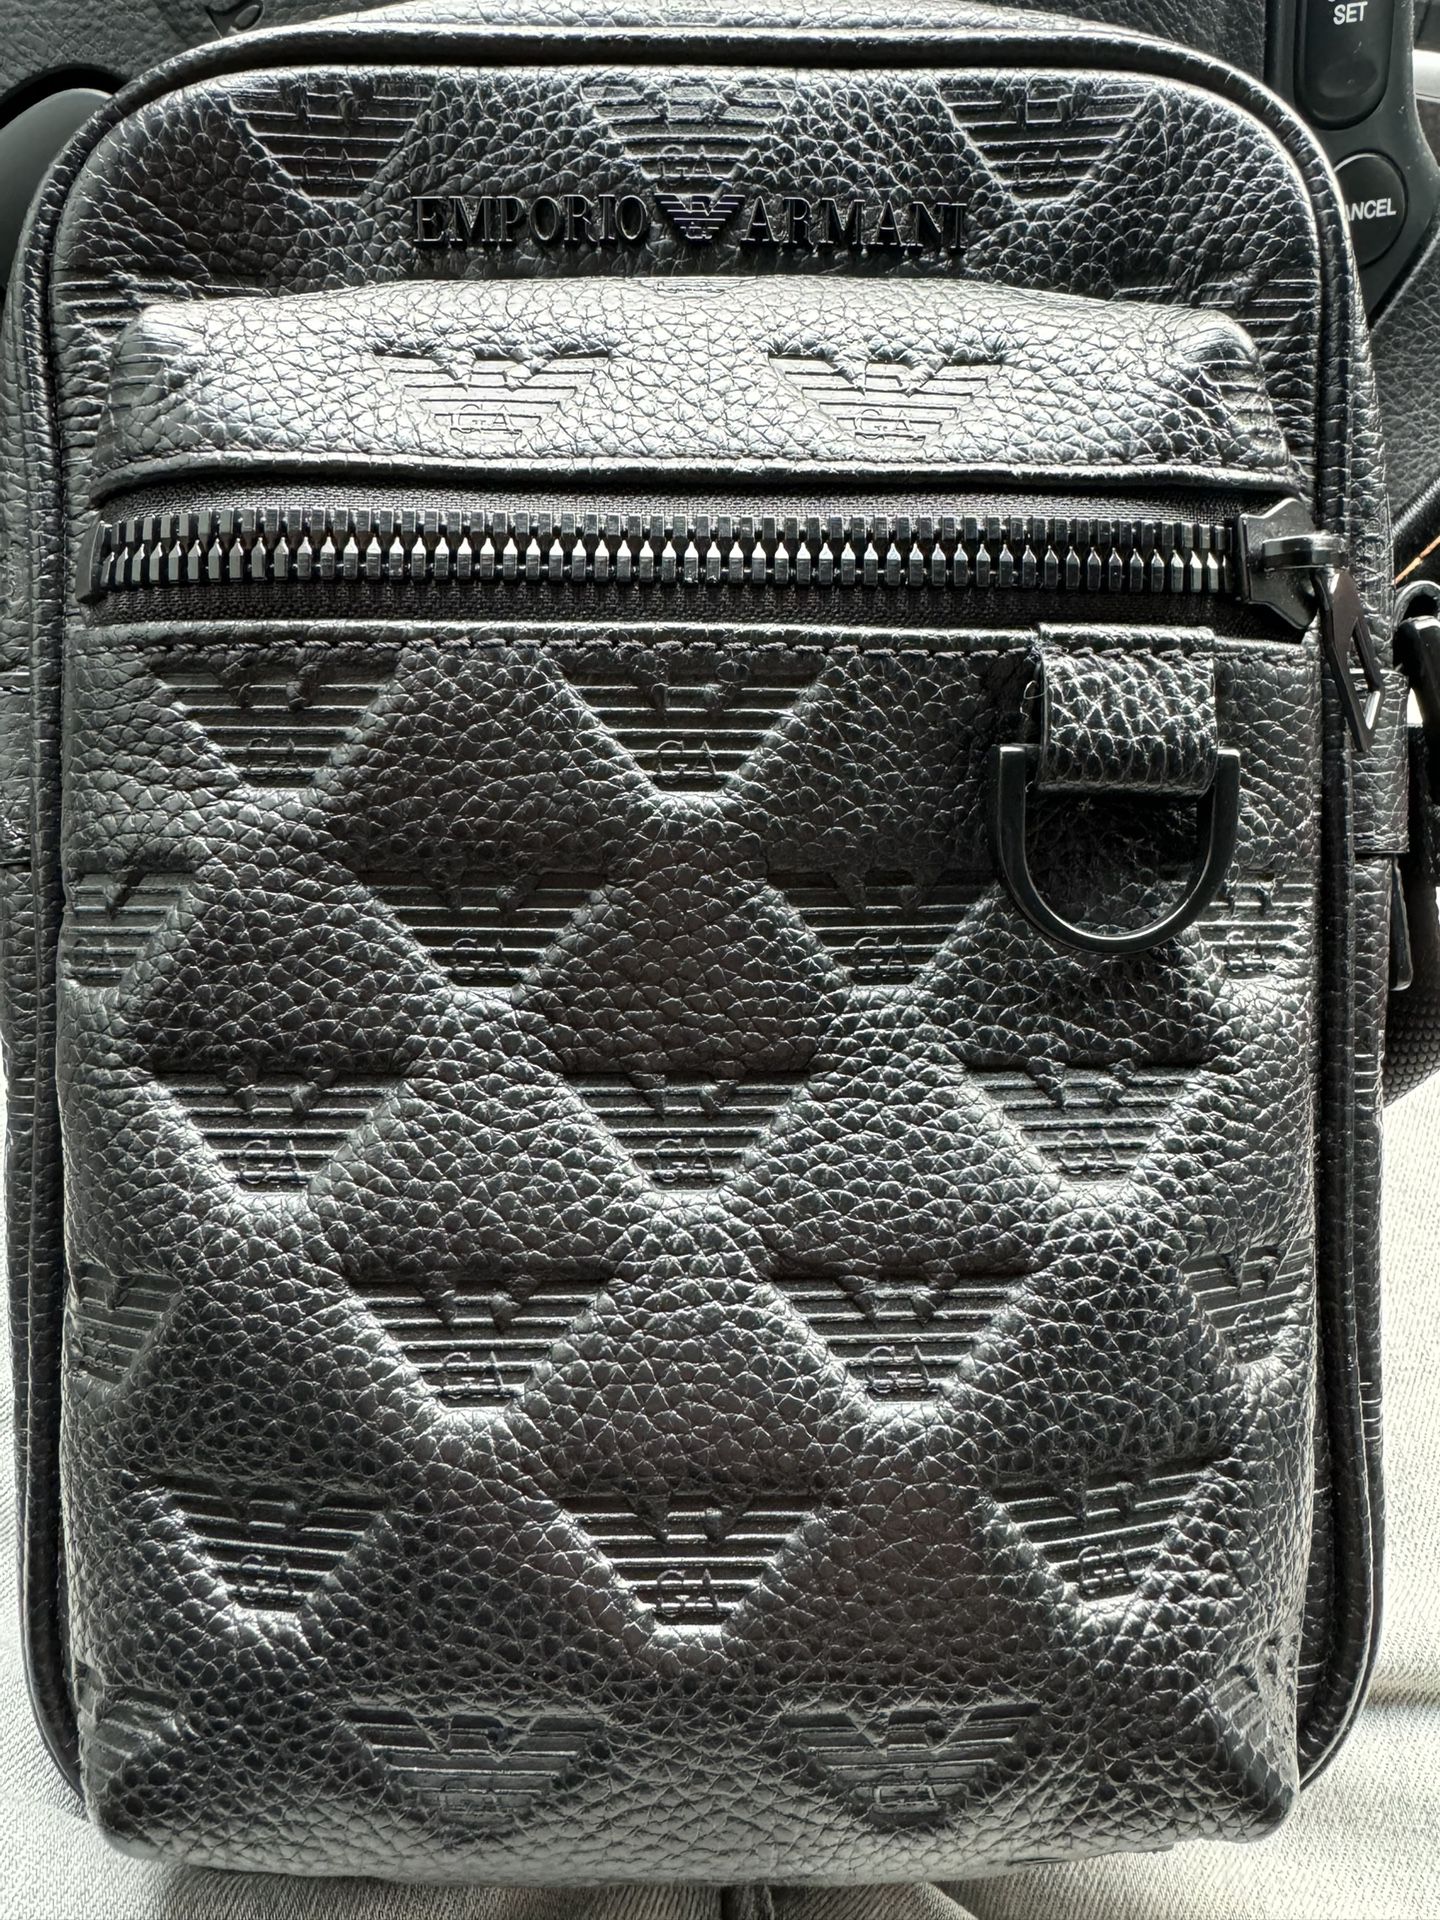 Leather Armani Messenger Bag 